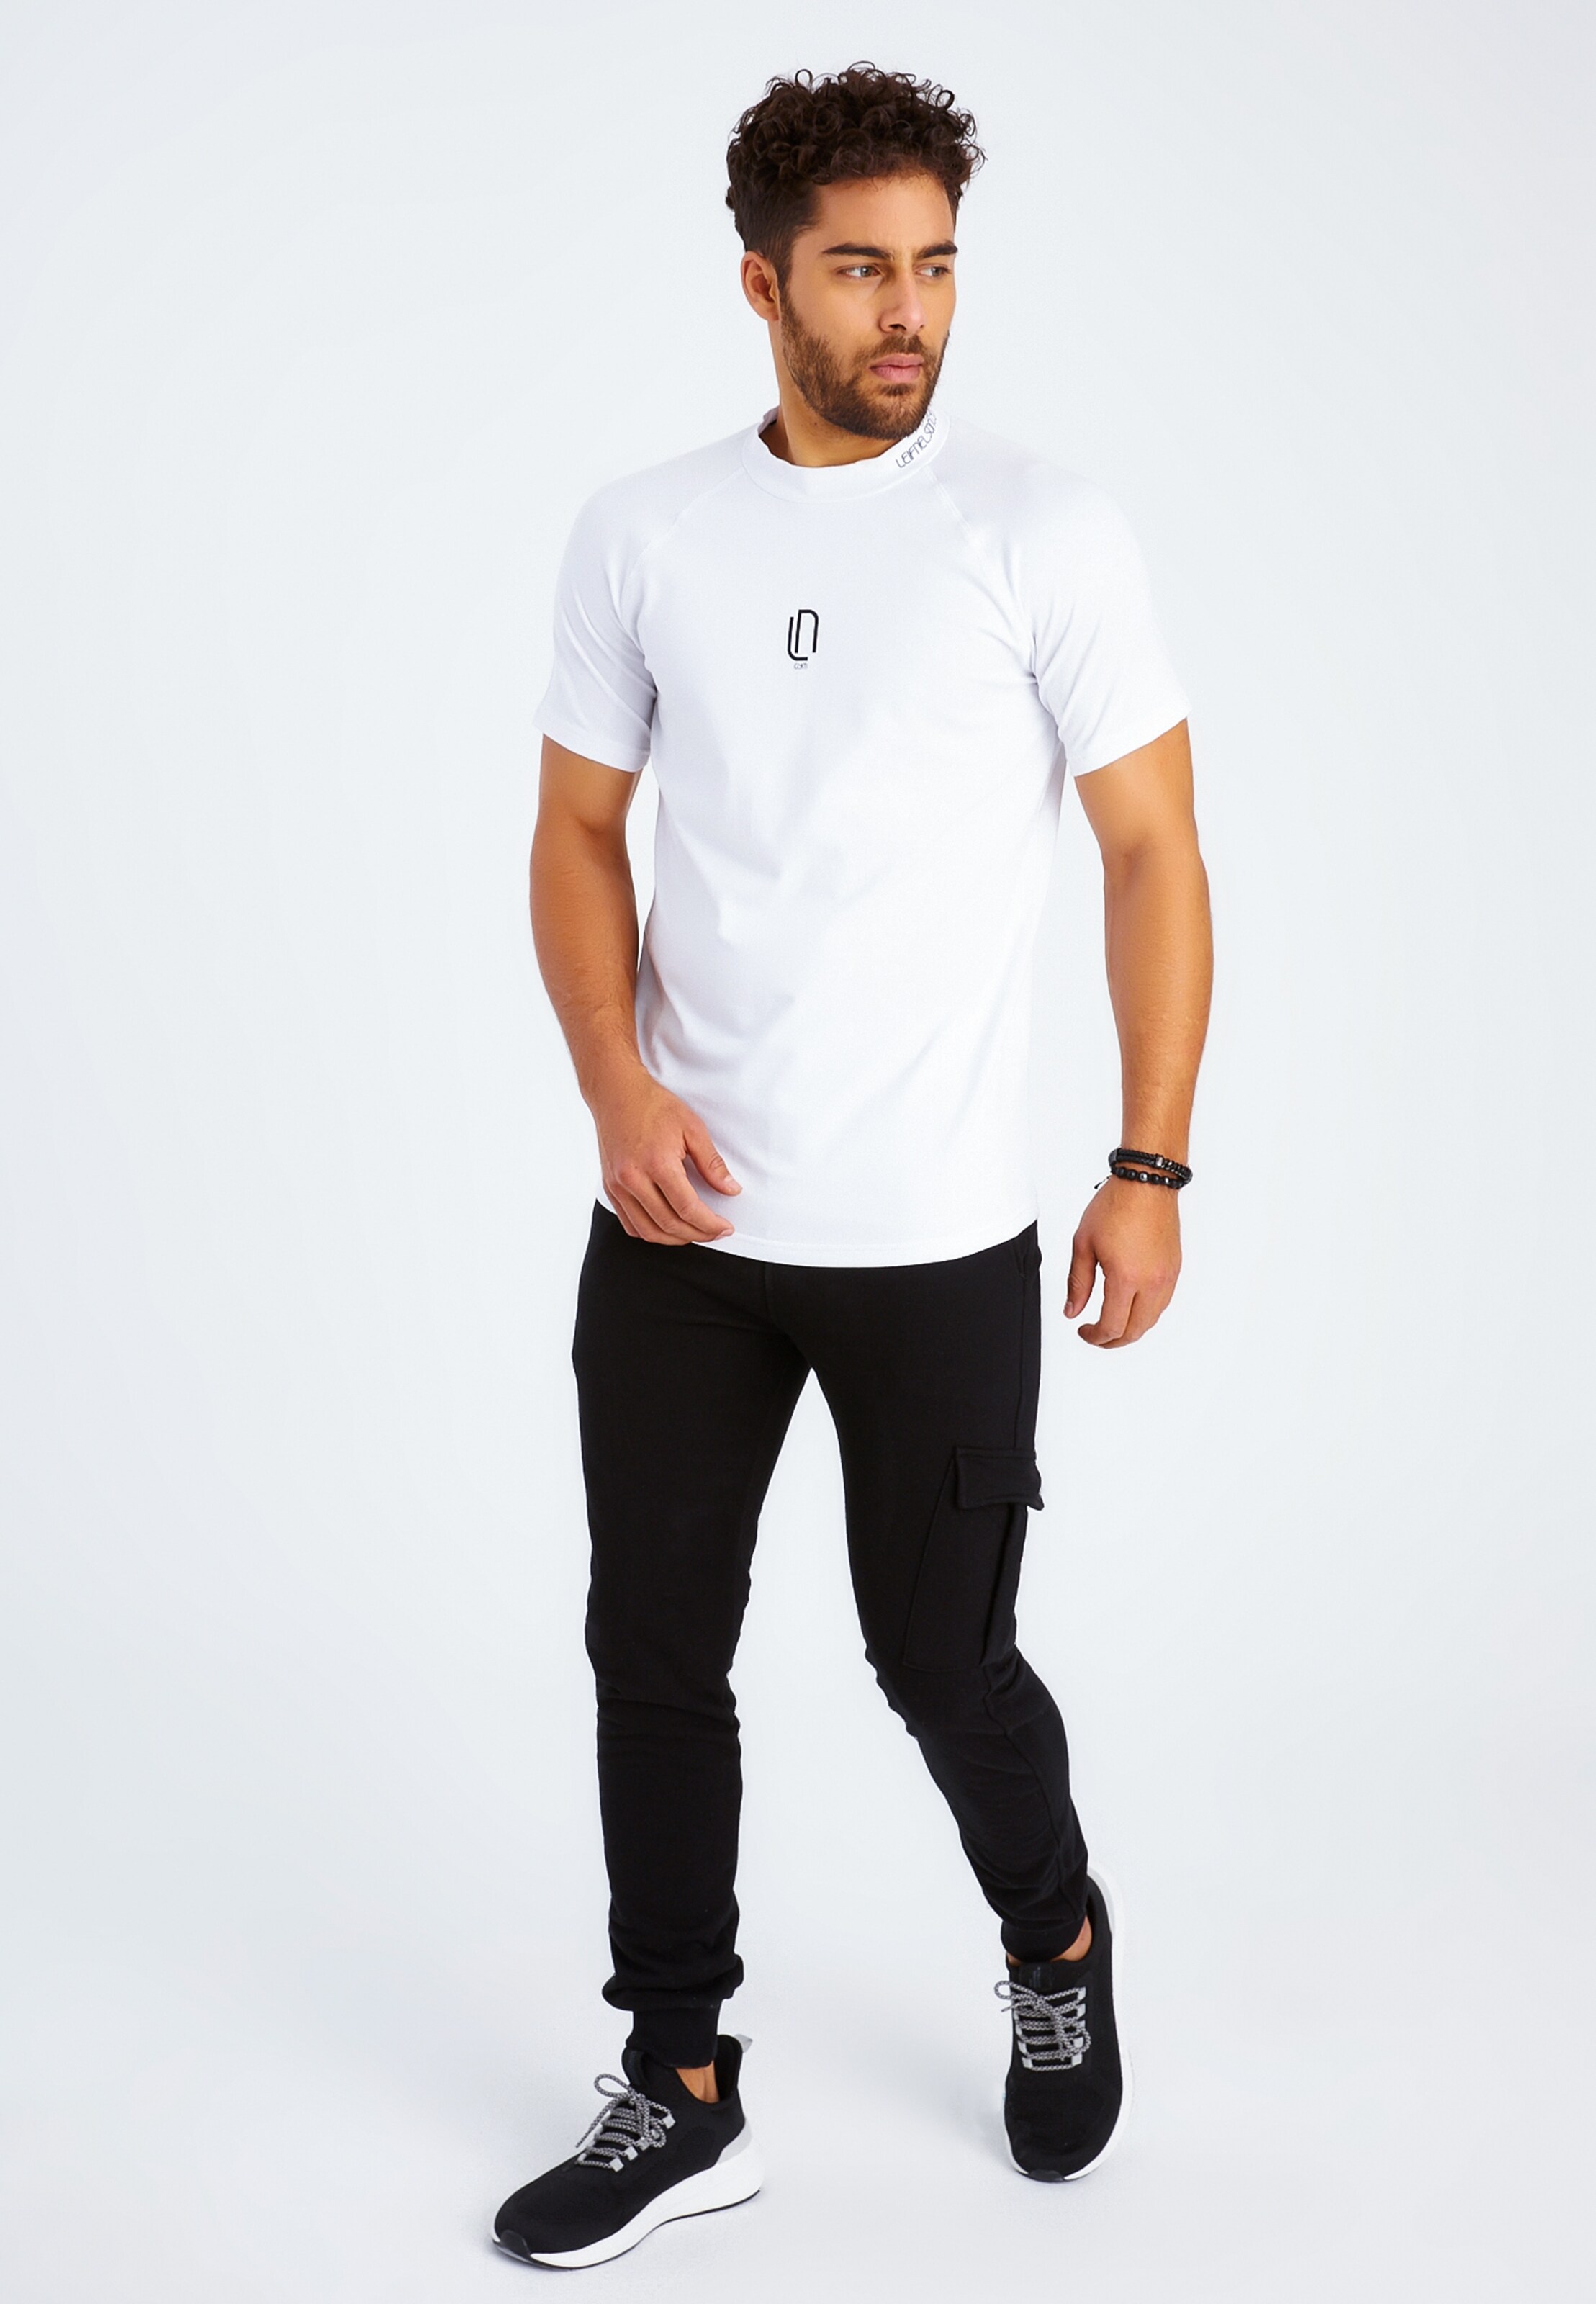 Männer Shirts Leif Nelson Gym T-Shirt Rundhals in Weiß - IC54596